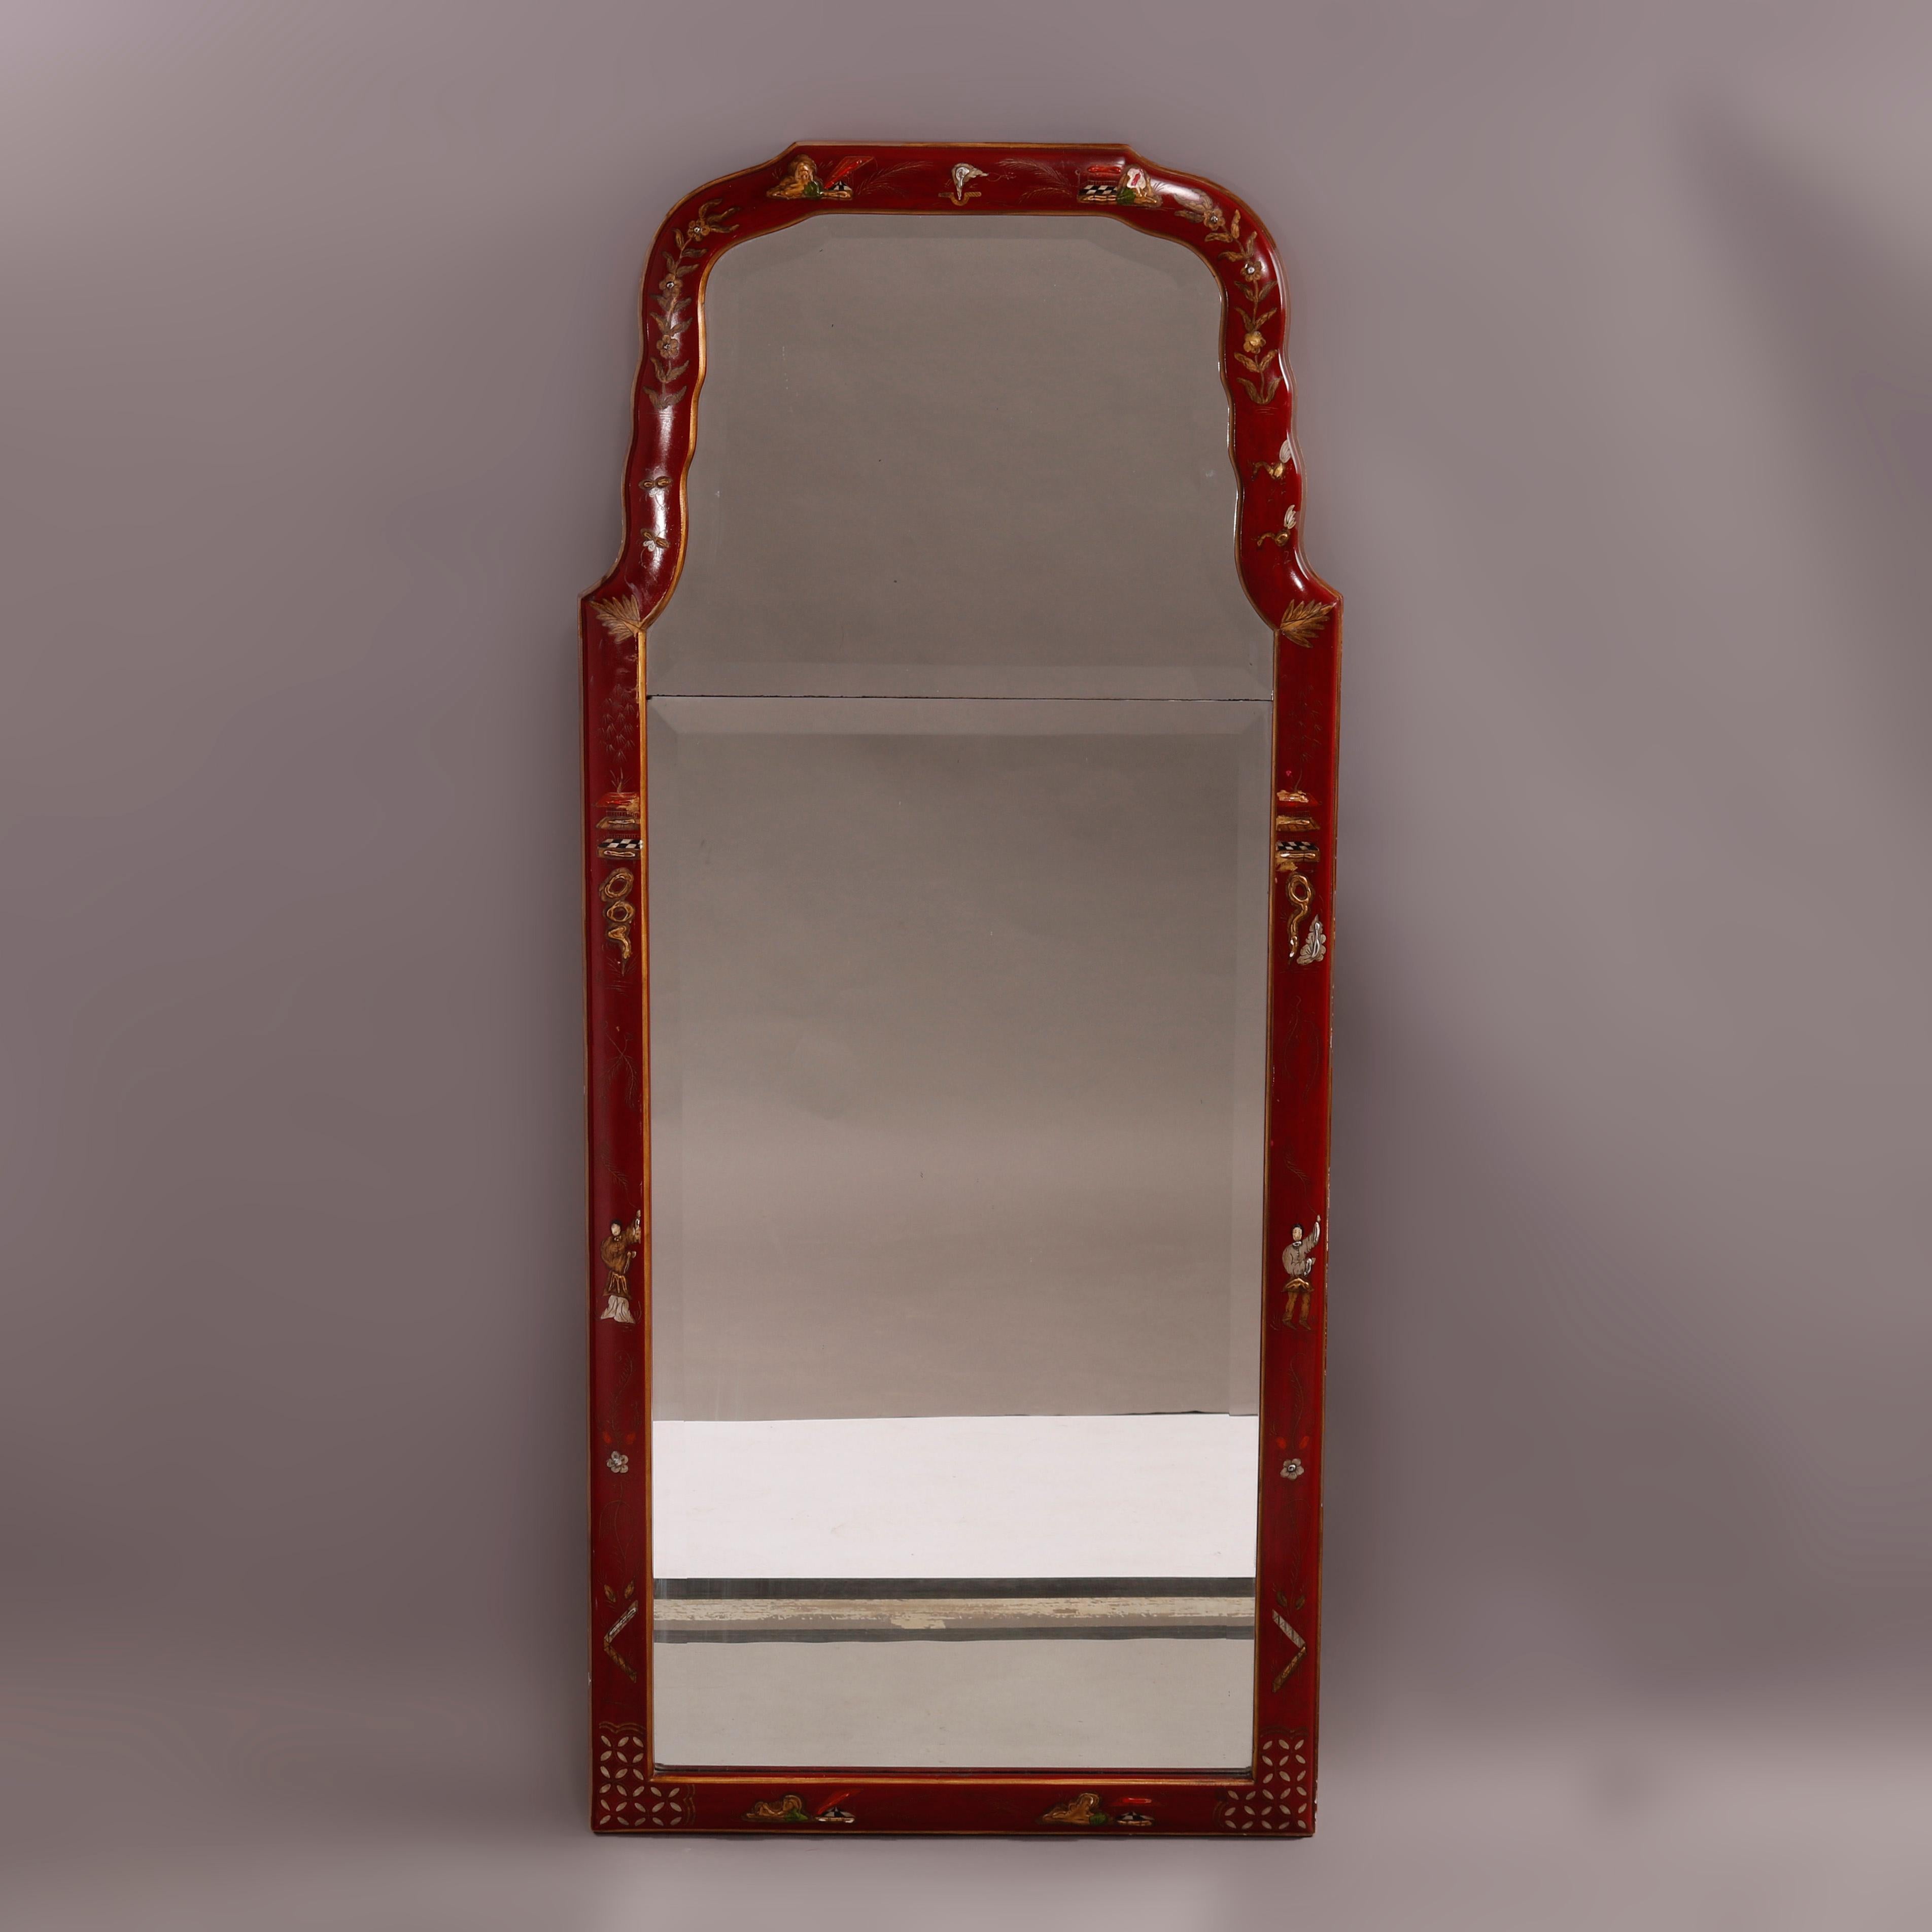 Un miroir mural décoré de Chinoiserie offre une forme façonnée avec un cadre rouge vermillon ayant des éléments de feuillage et de treillis émaillés à la main, entourant un miroir biseauté, 20e siècle

Mesures- 48.75''H x 21.25''W x 1.5''D.

Note